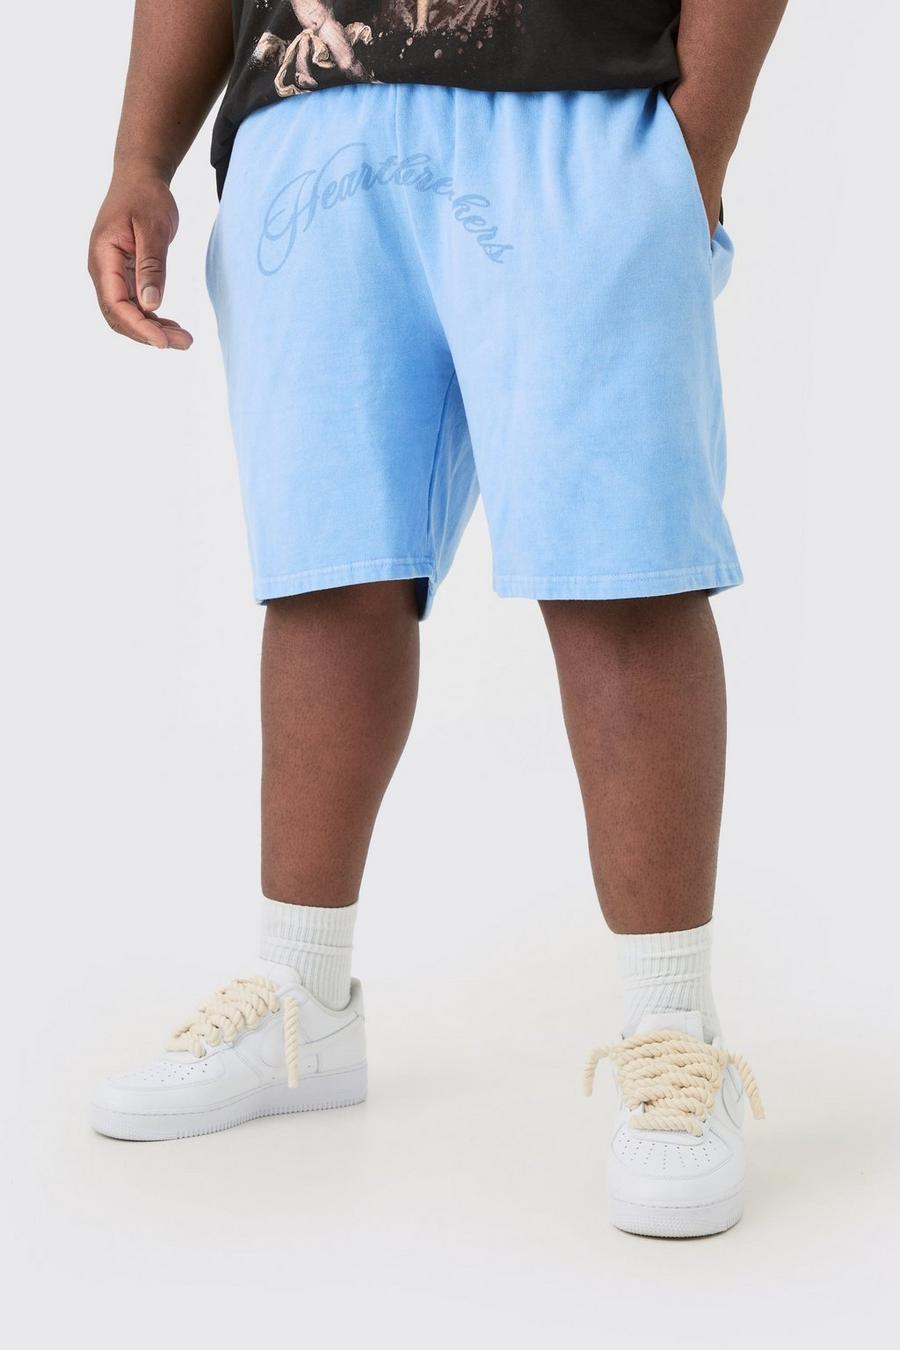 Pantalones cortos Plus oversize azules con estampado Hearbreakers, Blue